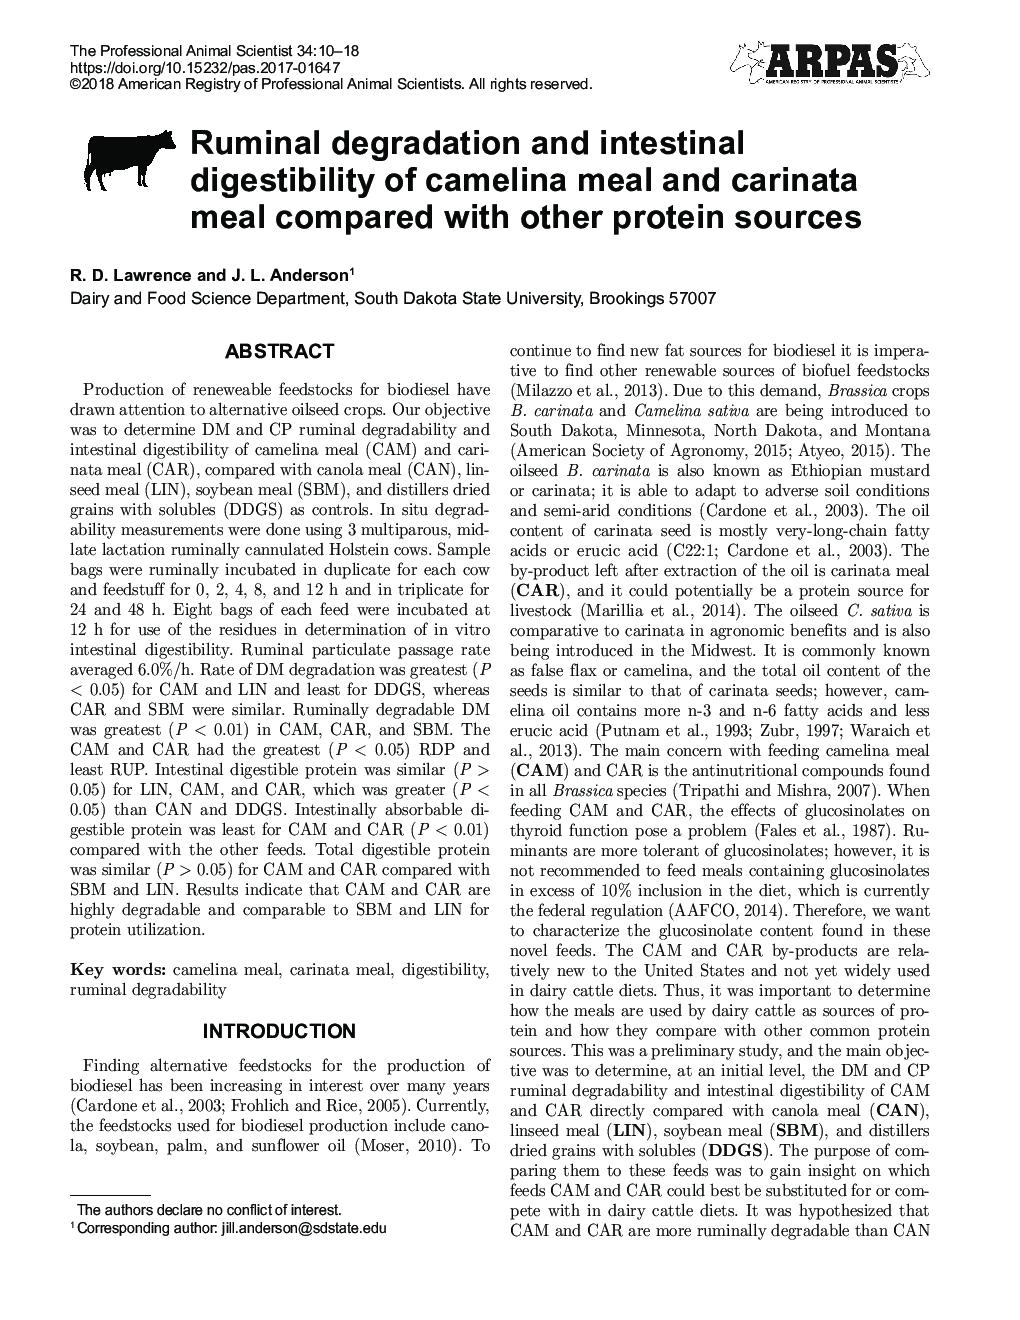 تجزیه شخم زدن و هضم روده غذای کمپوست و غذای کاریناتا در مقایسه با سایر منابع پروتئین 